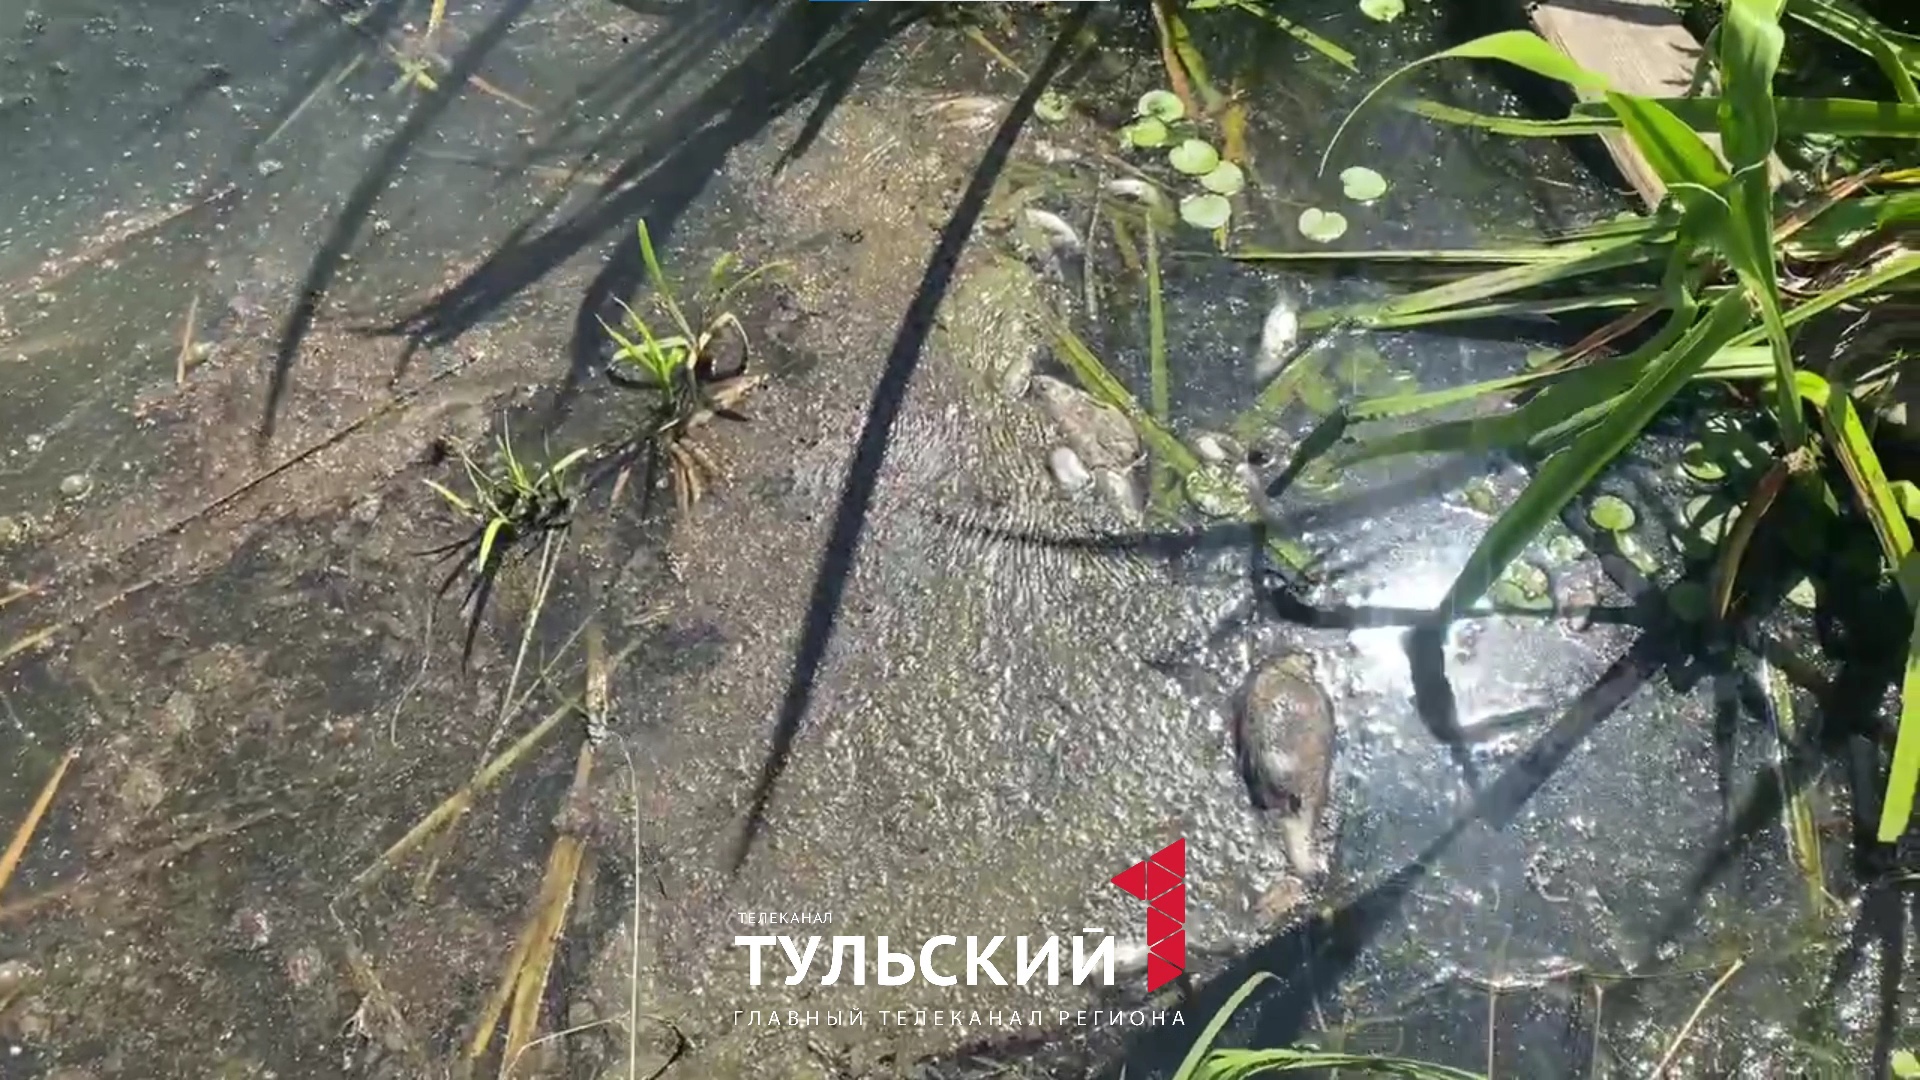 Названа причина массовой гибели рыбы в Щекинском водохранилище в Советске